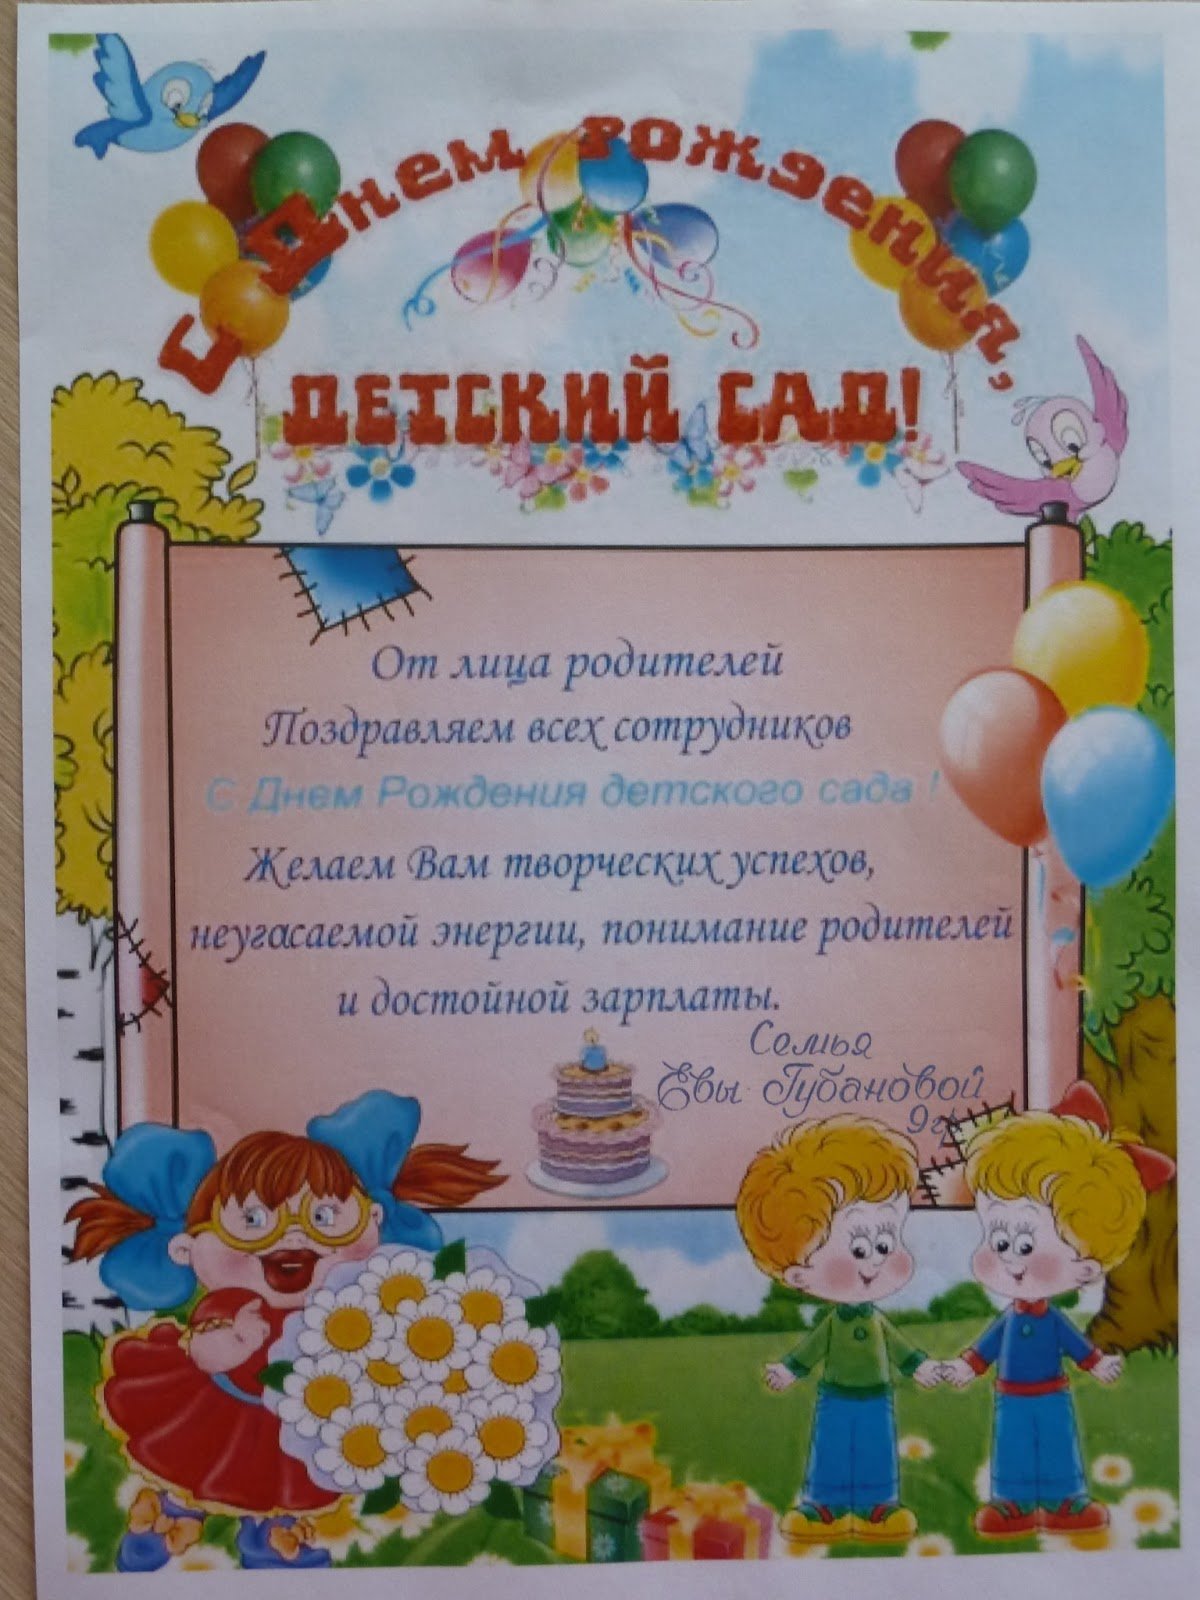 Поздравления с днем рождения детского сада (30 картинок) - Pichold